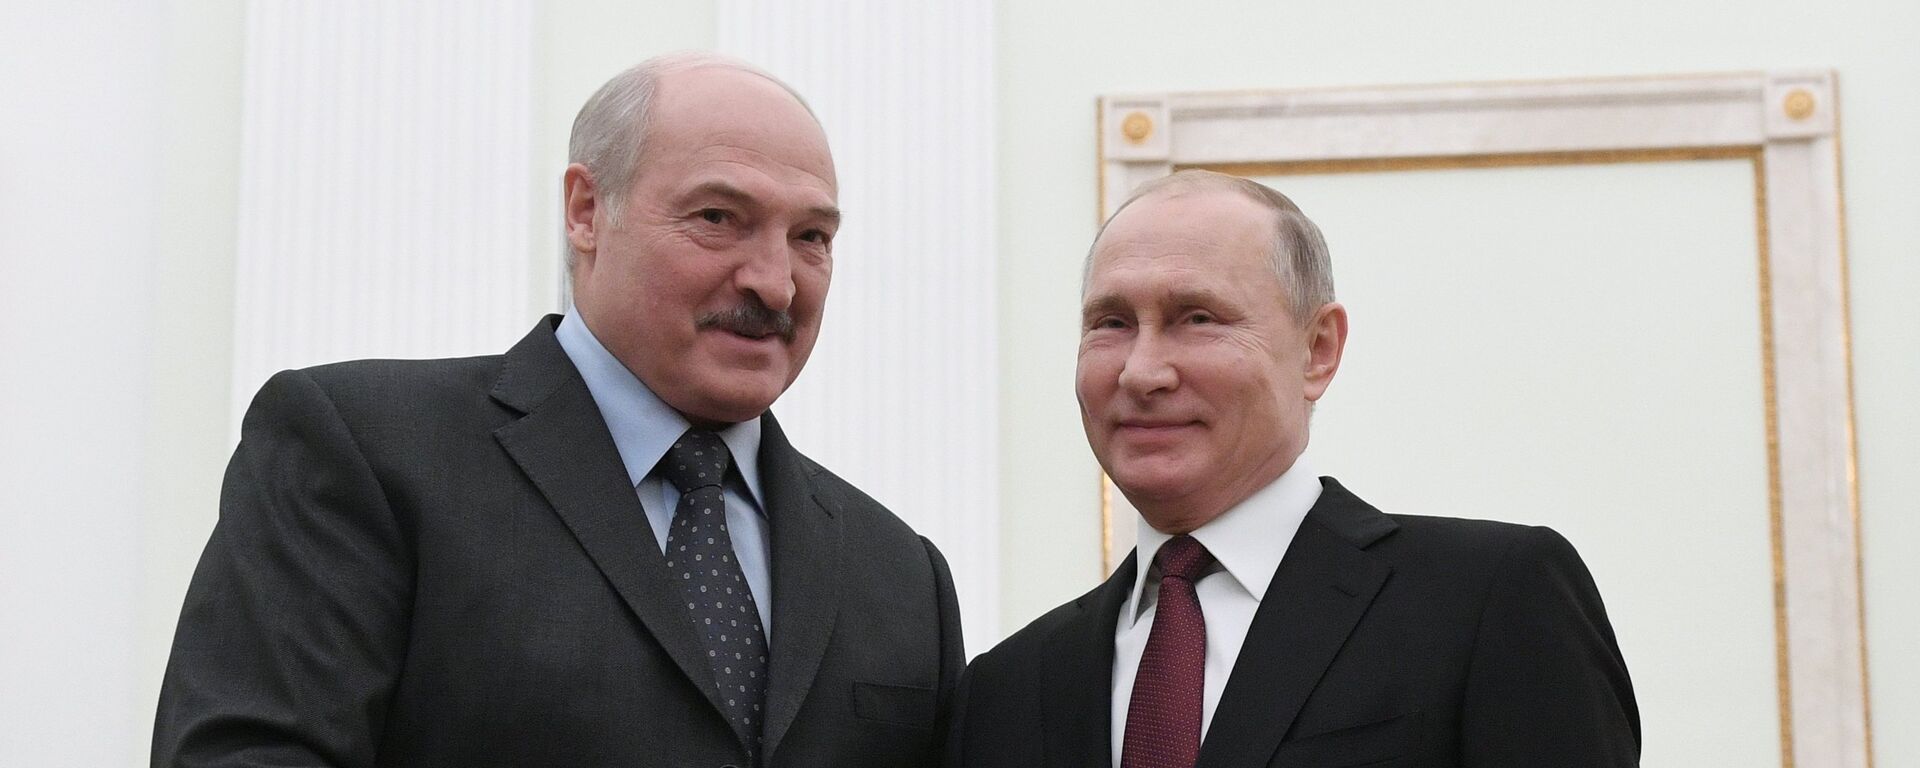 Председник Русије Владимир Путин и председник Белорусије Александар Лукашенко - Sputnik Србија, 1920, 29.12.2018